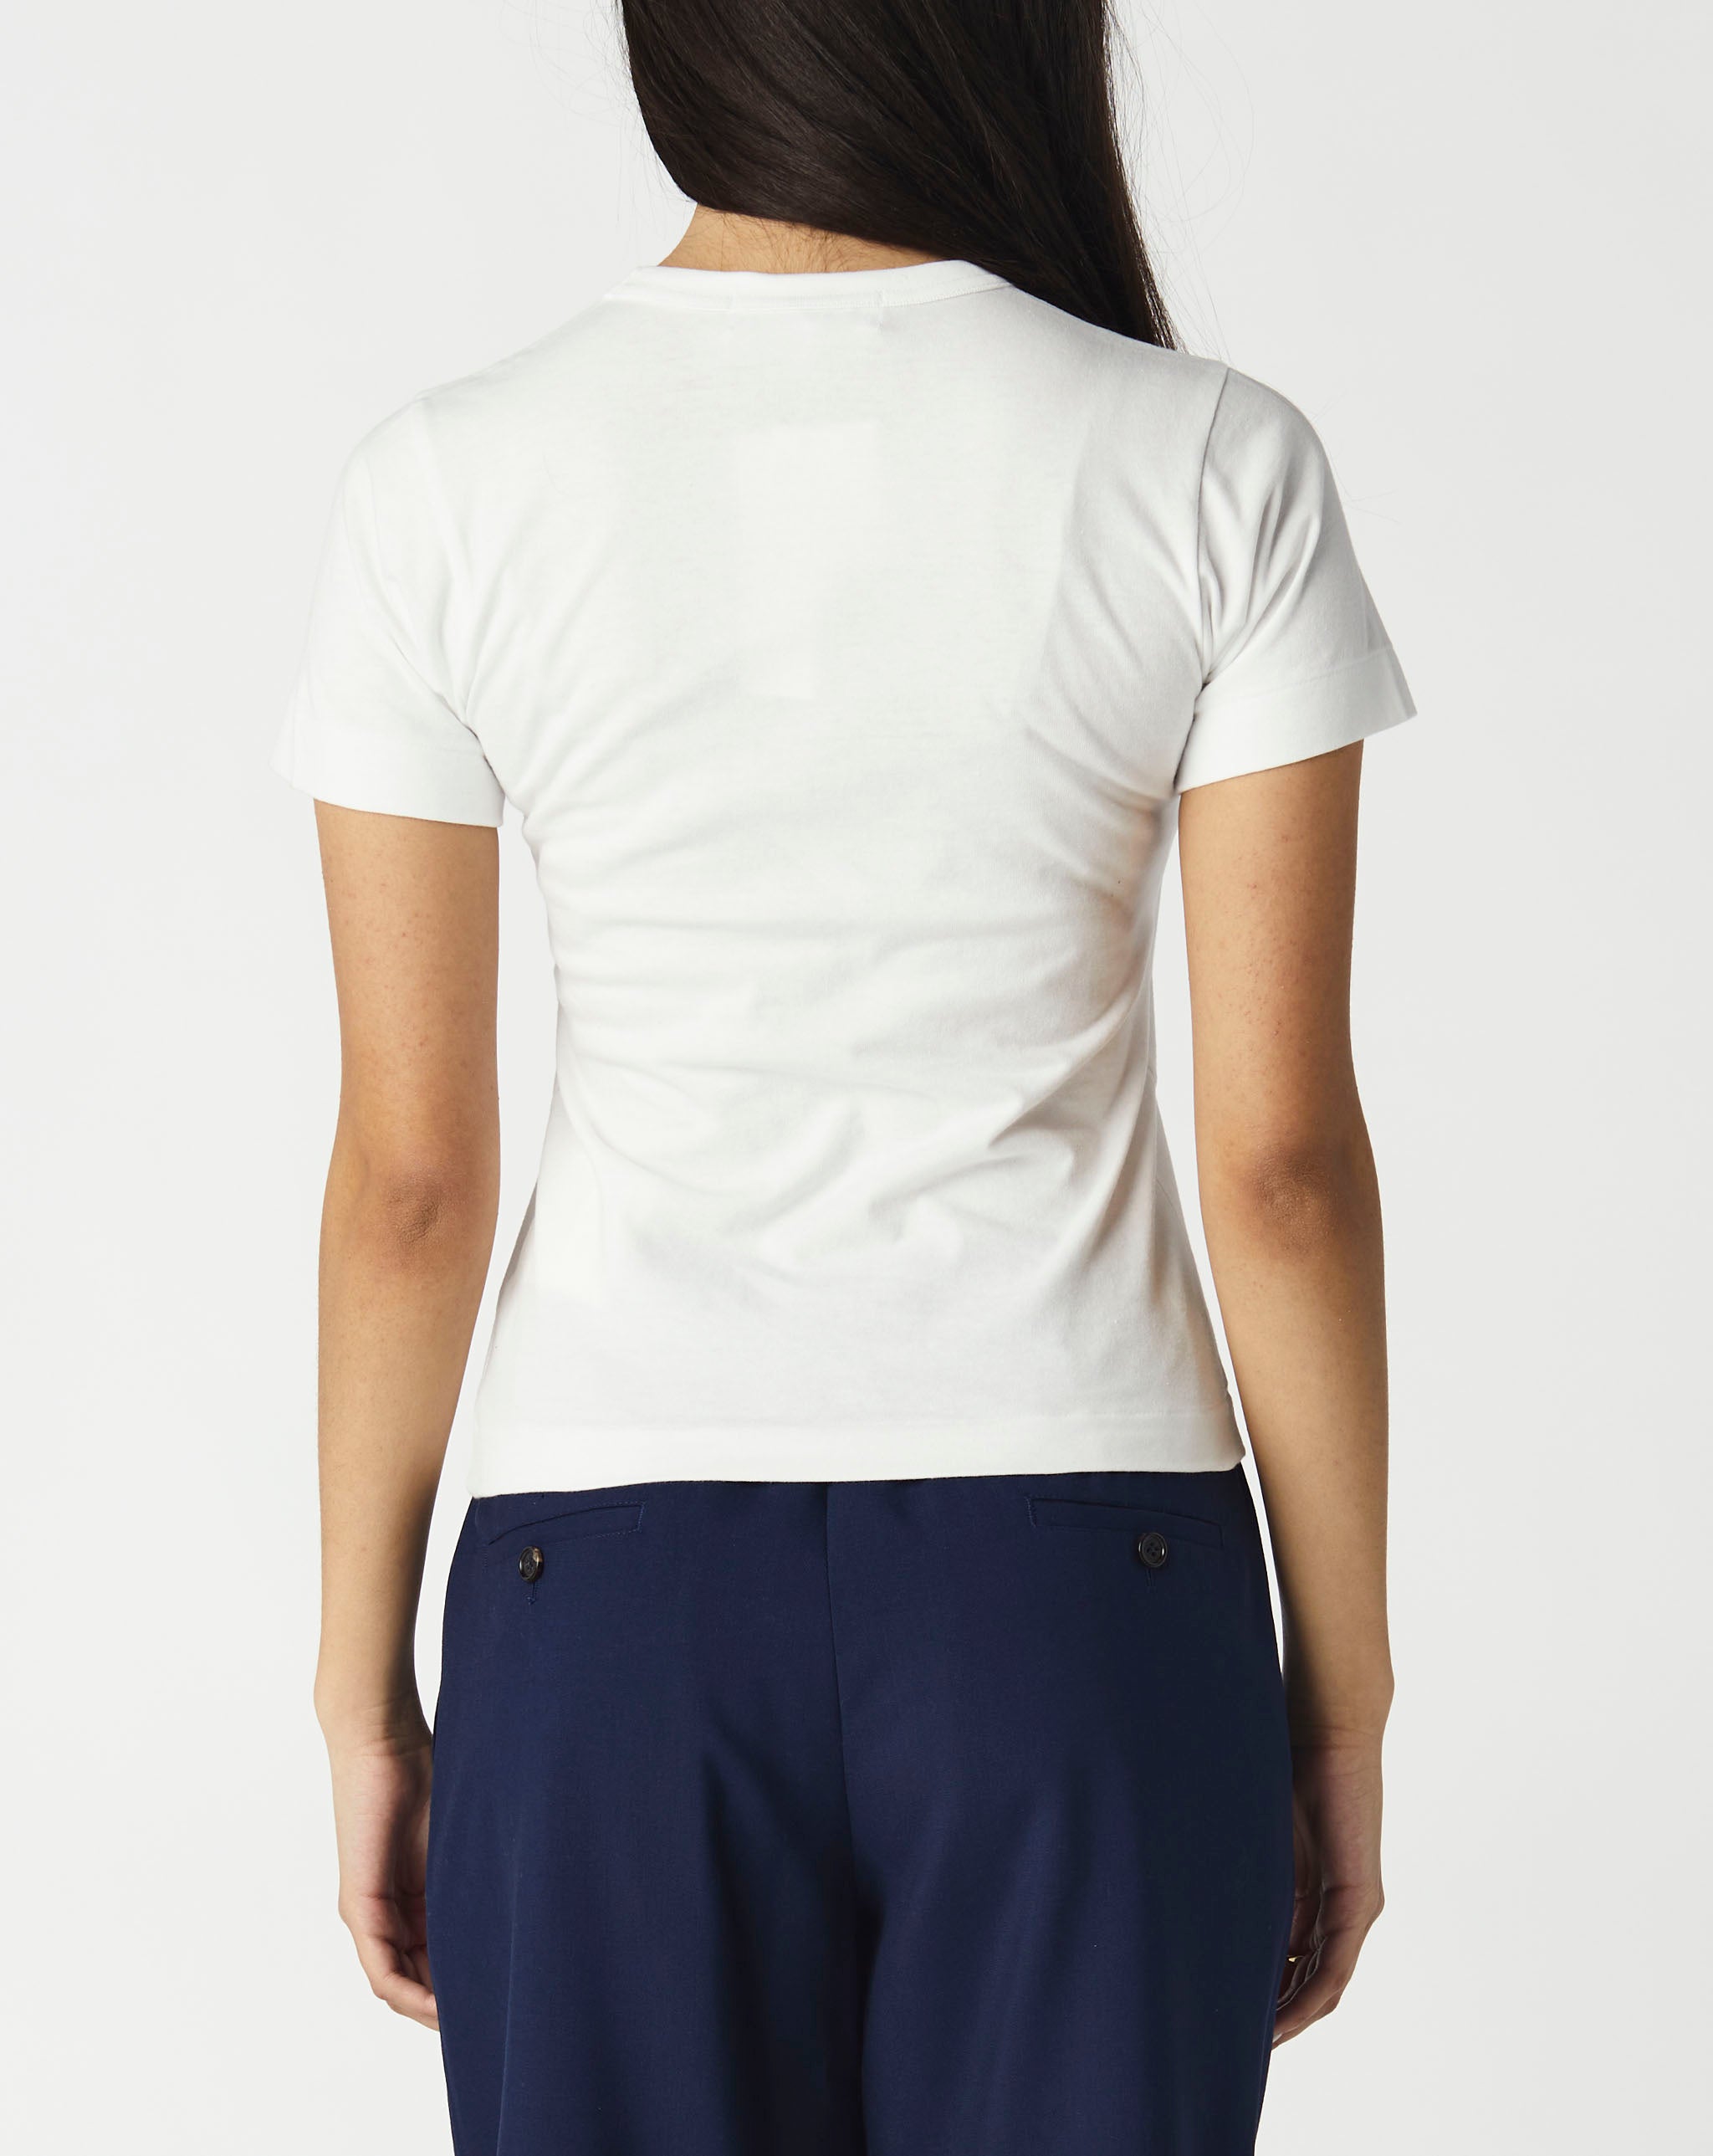 two-tone shirt jacket Women's Heart Logo T-Shirt  - Cheap Urlfreeze Jordan outlet